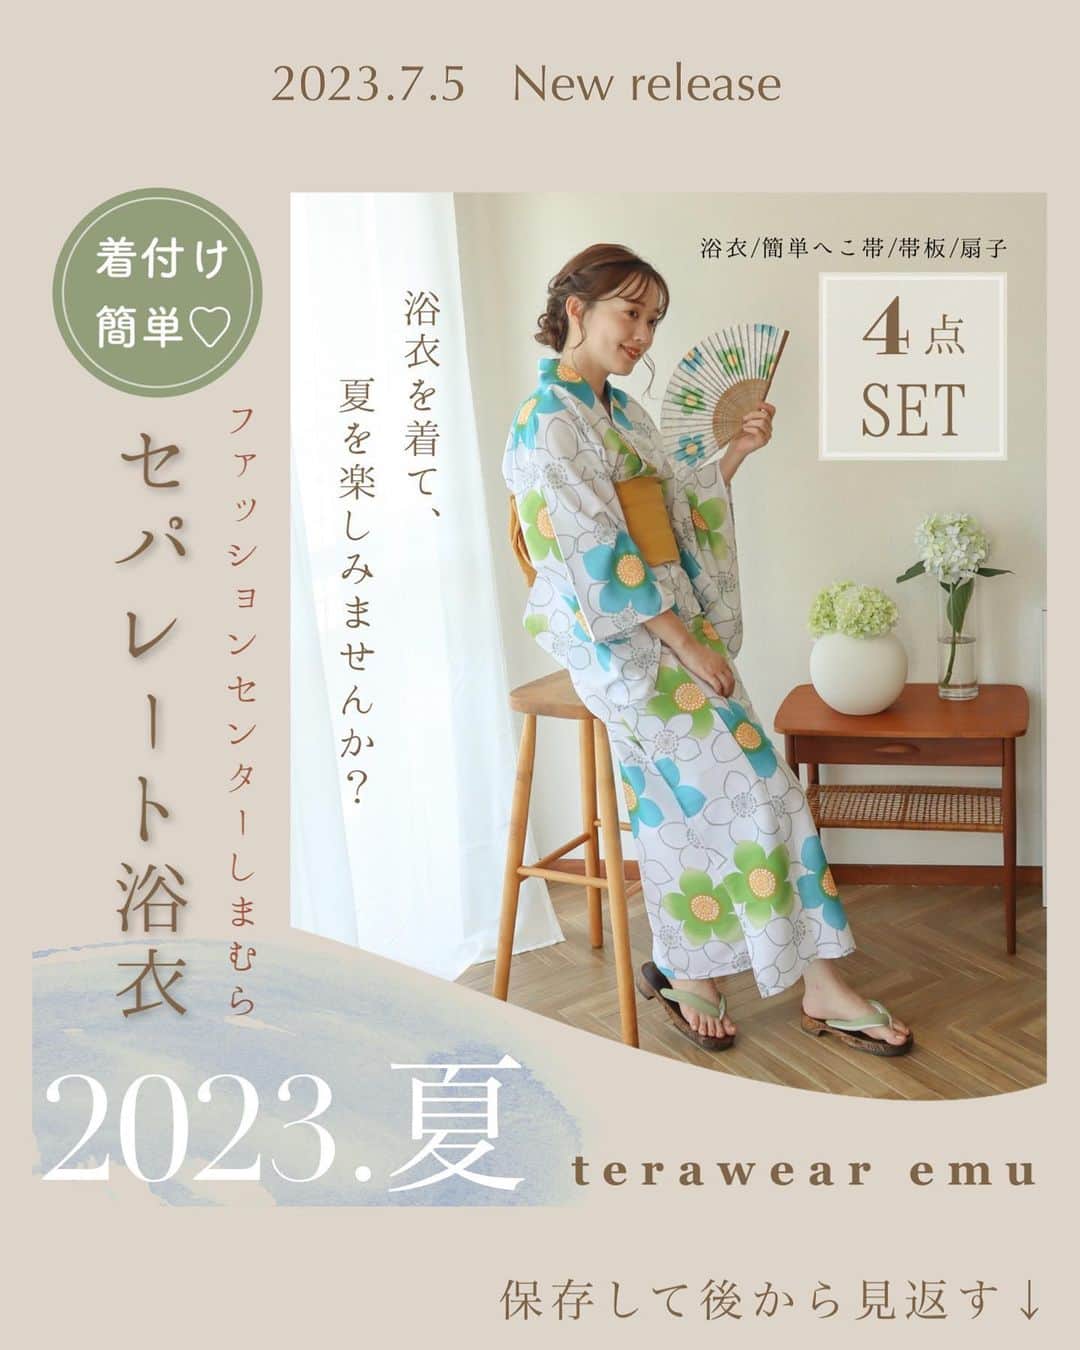 てらのインスタグラム：「🍧terawear emu浴衣発売のお知らせ🍉  いつも見てくださりありがとうございます☺️  @grshimamura  ファッションセンターしまむらにて展開中の 私のプロデュースブランド 「terawear emu」から 浴衣発売のお知らせです！  去年も大変好評だった 『おはしょり付きセパレート浴衣』を 今年もつくることができました…🥰✨  従来のセパレート浴衣の 「セパレート浴衣っぽく見えてしまう」 「動くたびに着崩れやすい…」 という問題点に着目し、 それらを解消した新しいタイプの セパレート浴衣なので、 不器用な方も、 着崩れが気になる方も安心🥰✨  お手入れも簡単です✨ ◯吸水速乾 ◯形態安定(ノーアイロンで着用可能) ◯マシンウォッシャブル(ネット使用)  また、今回の帯は 腰に巻いて面ファスナーで留めるだけの 簡単仕様となっております👘♡  今回も、キッズ浴衣は 2サイズ展開でご用意しておりますので 親子でぜひぜひ〜🥰✨  【発売日】 6/21(水)9時〜オンラインストア販売開始  7/5(水)店頭販売開始(レディースのみ)  《レディース浴衣各種》税込6,270円 　一部店舗とオンラインストアにて販売 　4点セット(浴衣／簡単へこ帯／帯板／扇子)  　ユリ/濃白　(品番：542-0032) 　淡色花柄にブラウンの帯が可愛い♡ 　上品なユリがオトナ可愛いこだわり 　ポイントです。  　サクラ/中白　(品番：542-0033) 　涼しげな配色の花柄に 　イエローの帯を合わせました。 　華やかで、少しレトロな雰囲気に。  　アジサイ/中紺　(品番：542-0034) 　浴衣の定番、アジサイ。 　落ち着きはありつつも暗過ぎない 　オトナカラーにこだわりました。  　ユリドット/中紺　(品番：542-0035) 　ユリの花柄に小さなドットを 　散りばめました。 　シックなネイビーに 　淡いピンクの差し色がポイント。  《キッズ浴衣》税込6,270円 　オンラインストアにて販売 　3点セット(浴衣／簡単へこ帯／下駄)  　フジ/中白　(品番：739-0010) 　サイズ　140(適応身長135〜145cm)  　ユリ/中桃(739-0009) 　サイズ　150(適応身長145〜155cm) 　(小柄な女性にもおすすめなサイズ💕)  去年の今頃はまだお祭りも あったりなかったりなご時世のなか、 はじめて浴衣をプロデュースしました。  実は…とてもプレッシャーを感じていました。 (浴衣業界をなんとか盛り上げたい…！という 壮大な使命感も勝手に抱えていたので🤣) そんな中でも、大好評だったemuの浴衣。  あの時は、みんなに思いが届いた気がして とても嬉しかったなぁ…🥺✨  今年も浴衣をリリースすることができたのは いつもemuを推してくれて 応援してくれるみんなのおかげです💕 いつもありがとう…🥰！！  忘れられない夏の思い出を たくさんつくりましょう〜🍧💕  #しまパト#しまむら#しまむらパトロール#しまむらコーデ#ファッションセンターしまむら#プチプラ#プチプラコーデ#ママコーデ#terawearemu#きっと見つかる#みんなワクワク#夏コーデ#浴衣#yukata#夏祭り#浴衣女子」